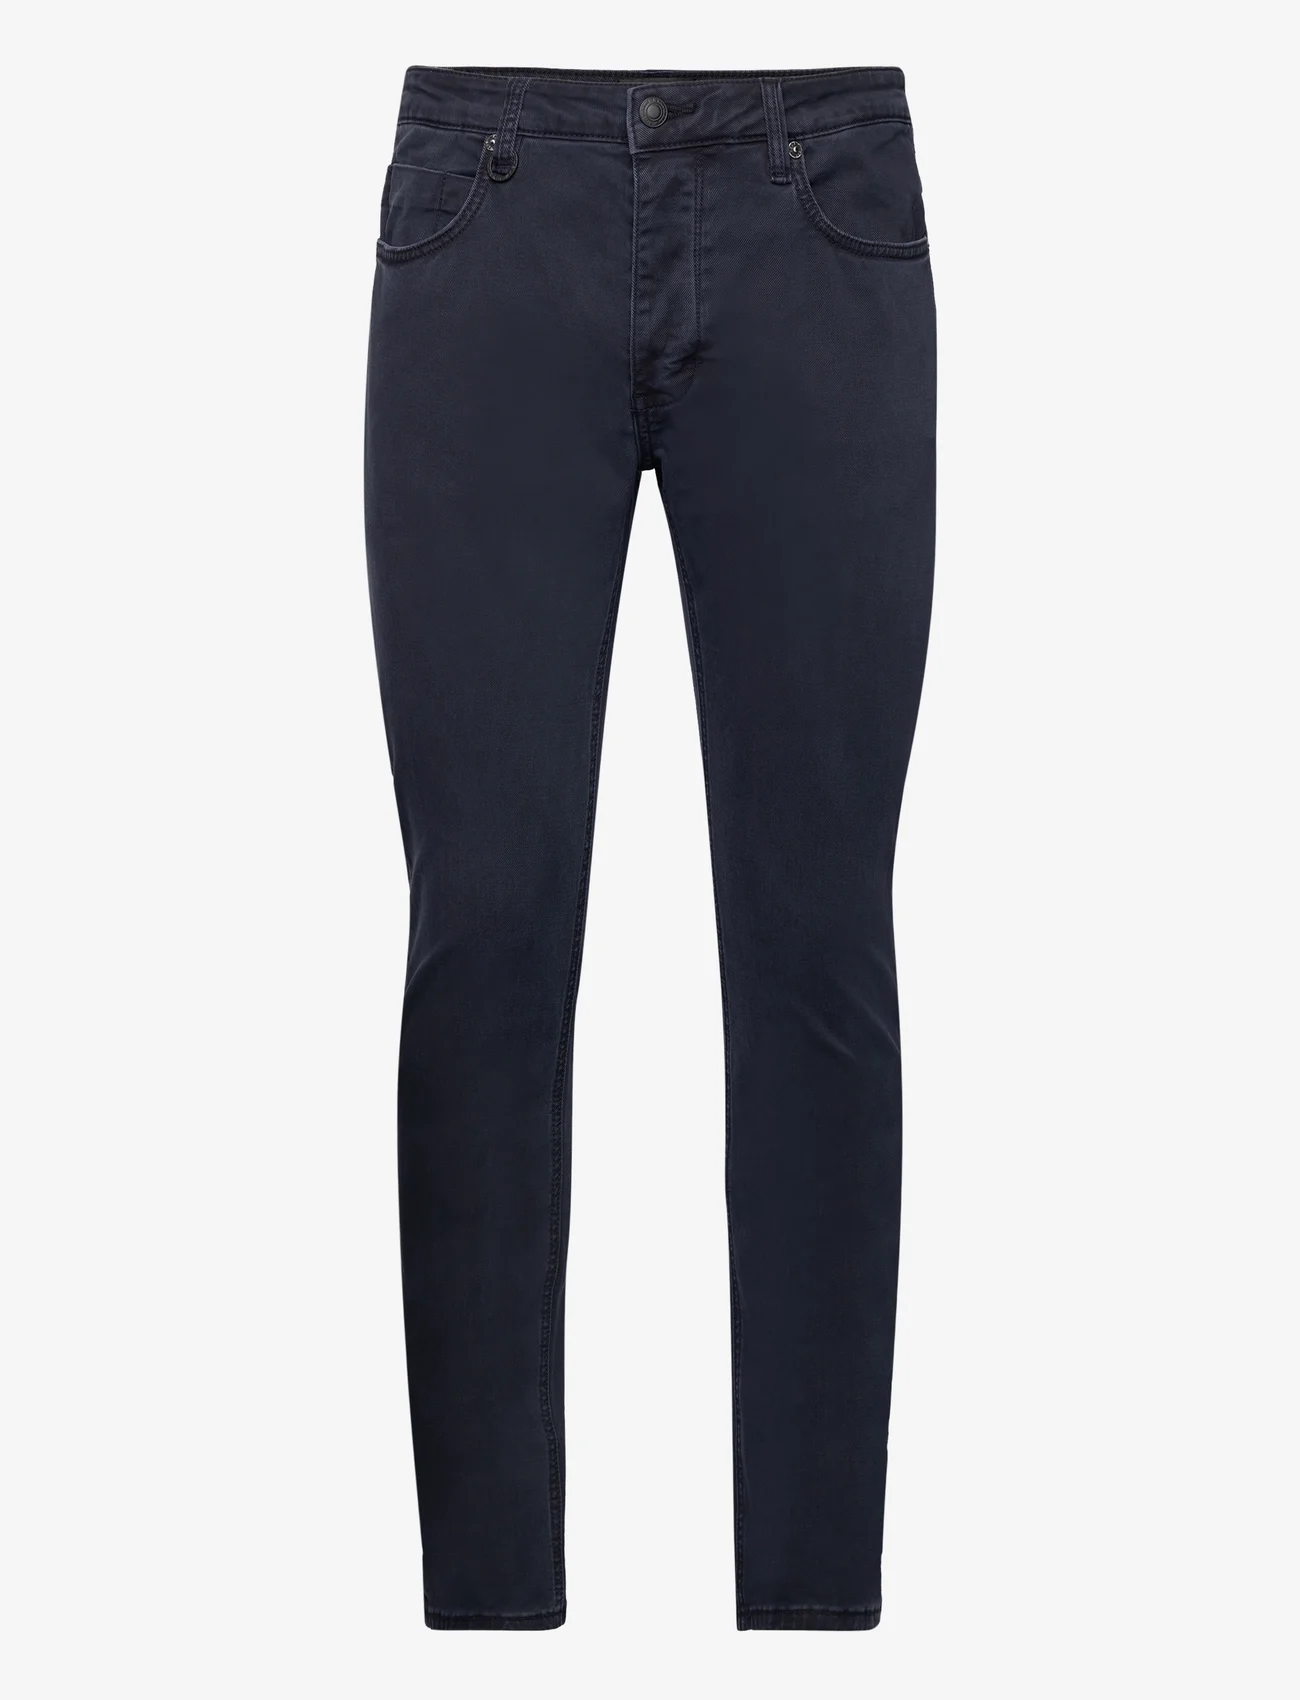 NEUW - LOU SLIM TWILL NAVY - slim jeans - blue - 0